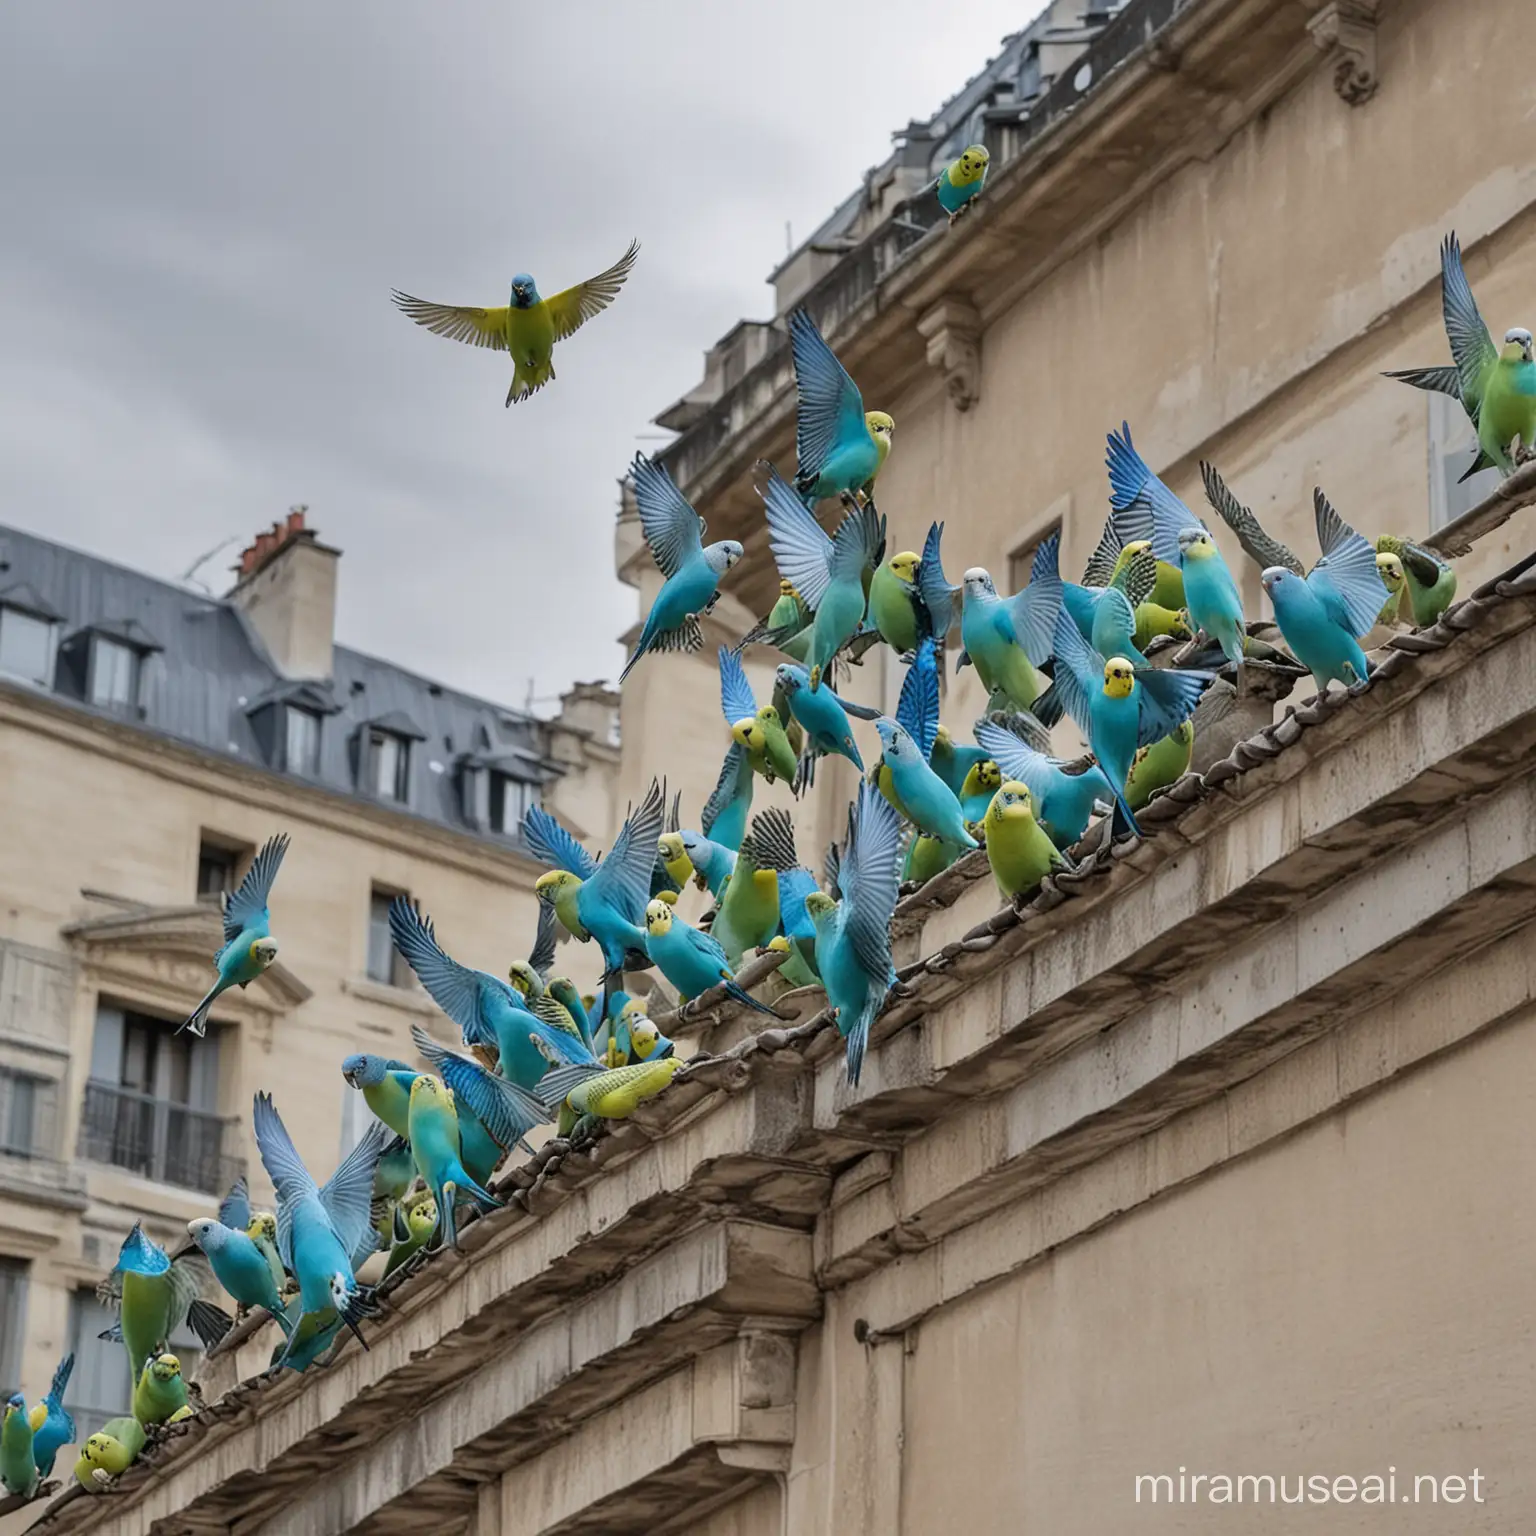 10 perruches ondulée bleue et verte en train de prendre son envol sur le toit d'un immeuble parisisen